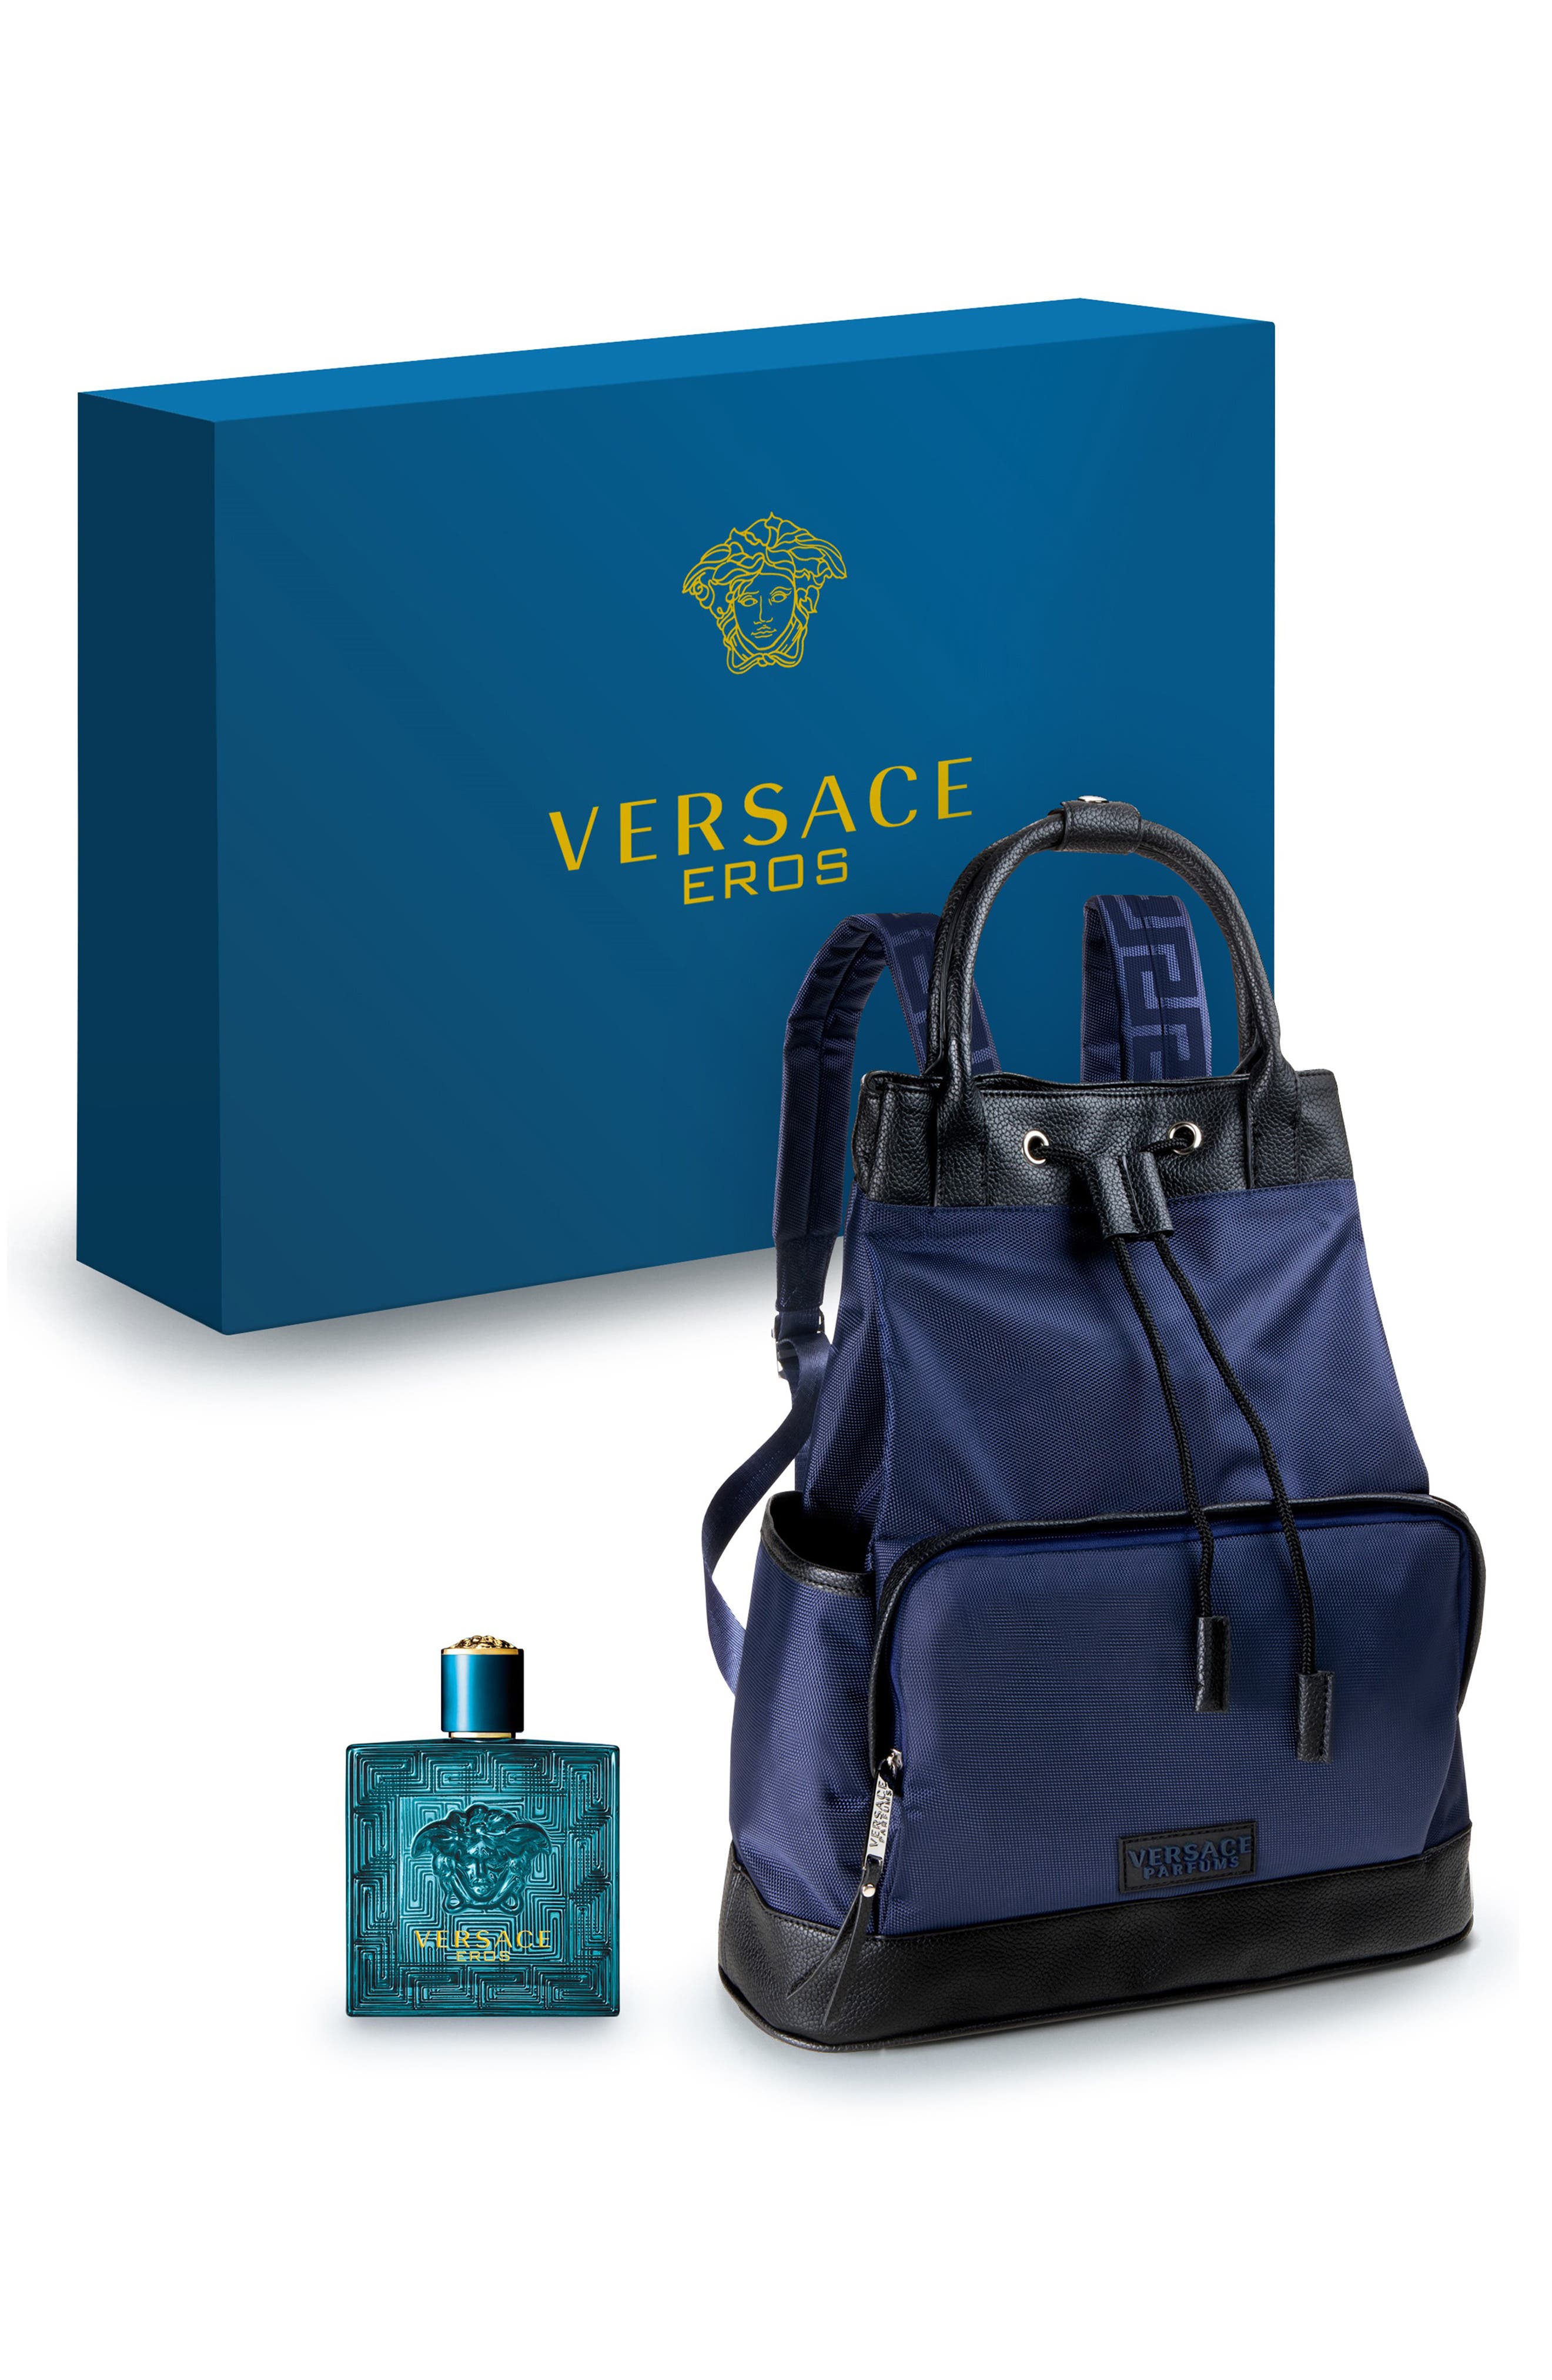 Versace Eros Fragrance \u0026 Backpack Set 